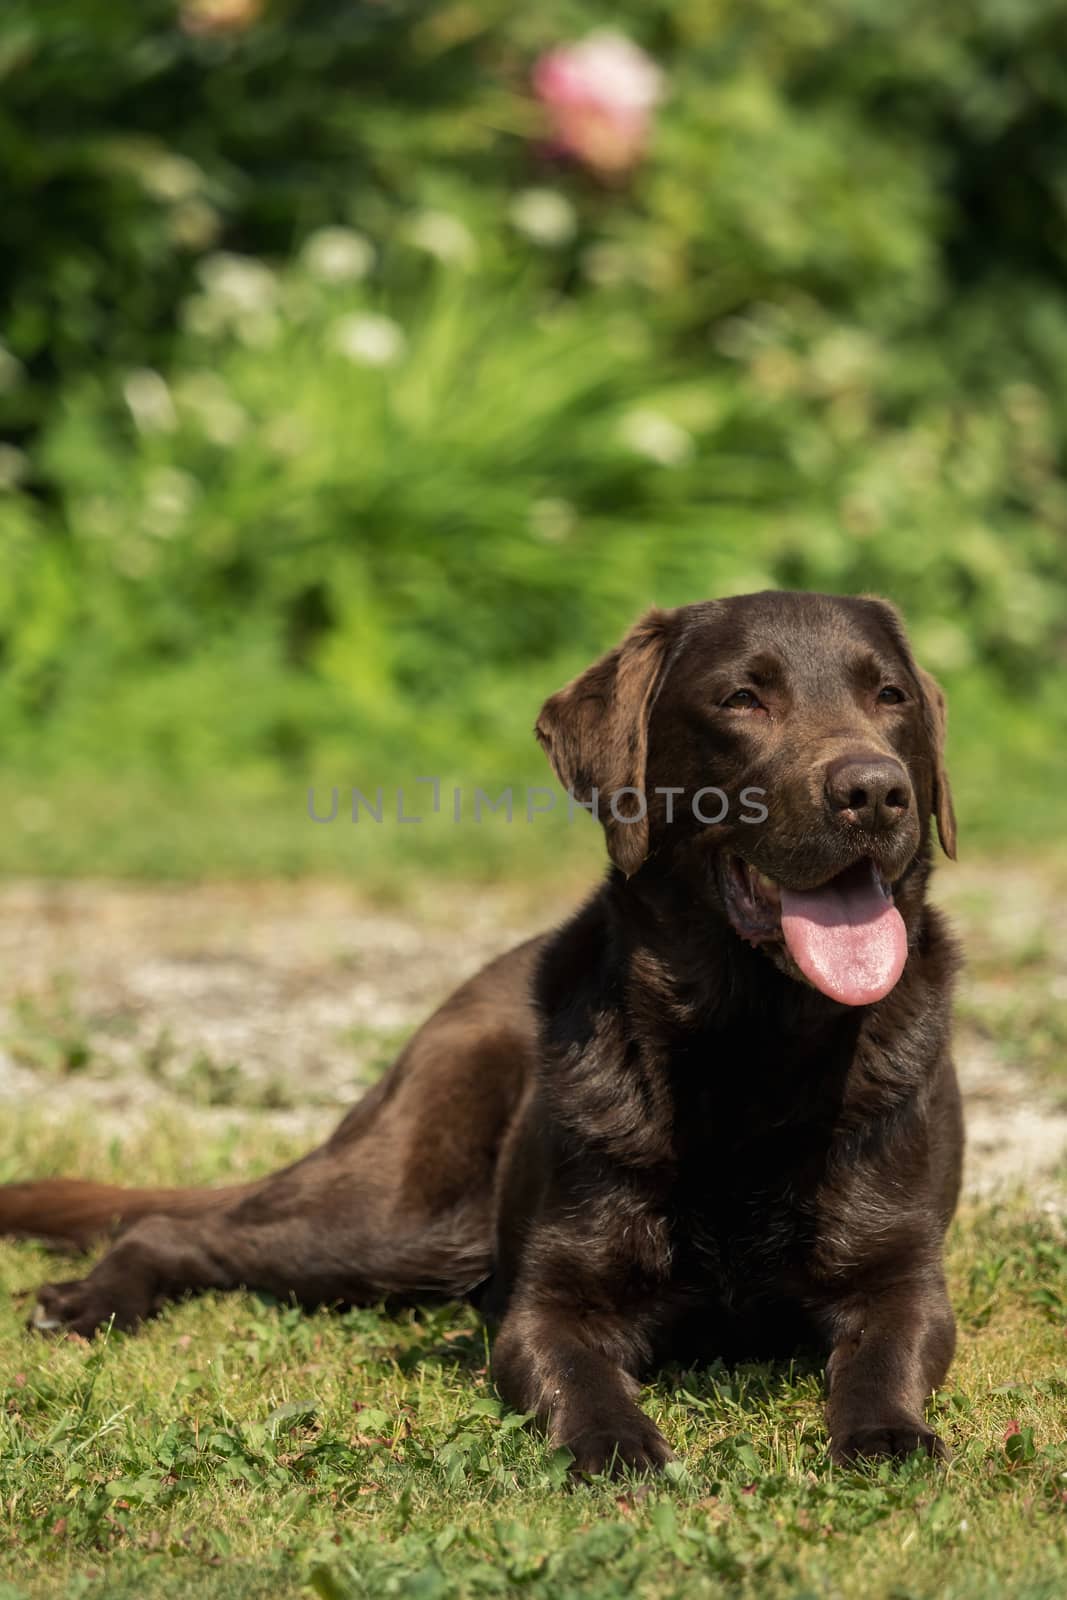 An old brown Labrador Retriever in the garden